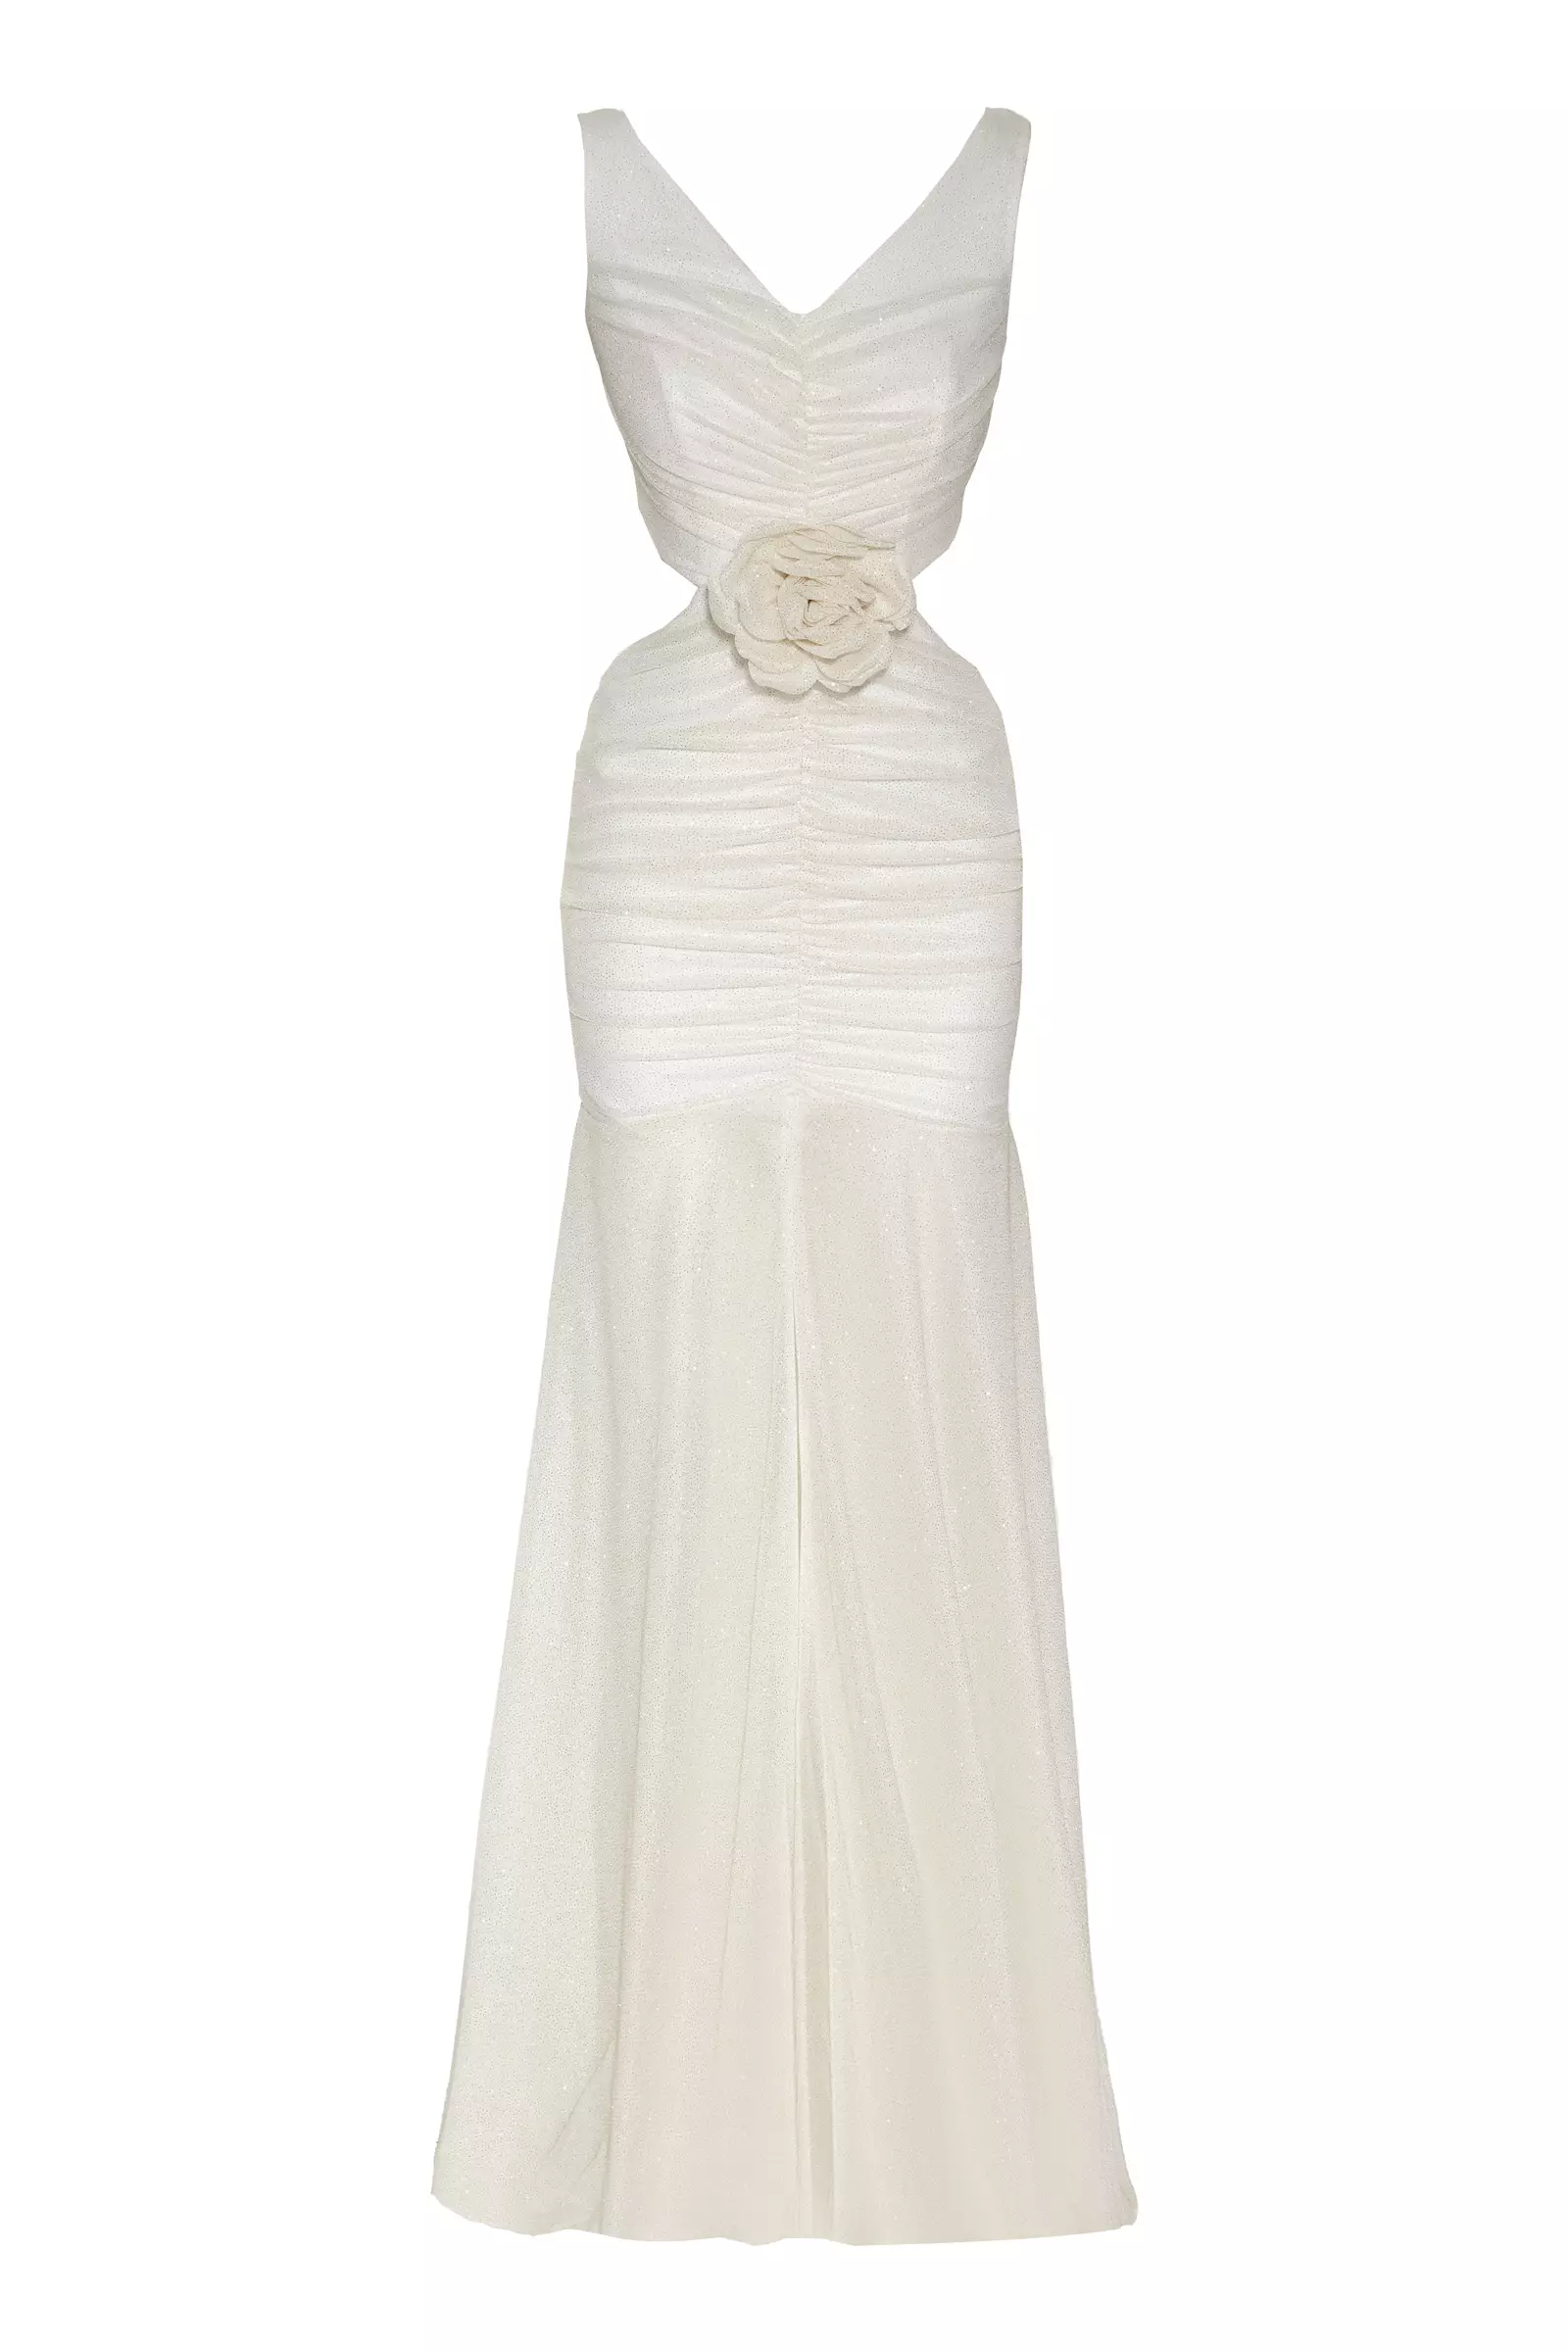 White tulle sleeveless maxi dress